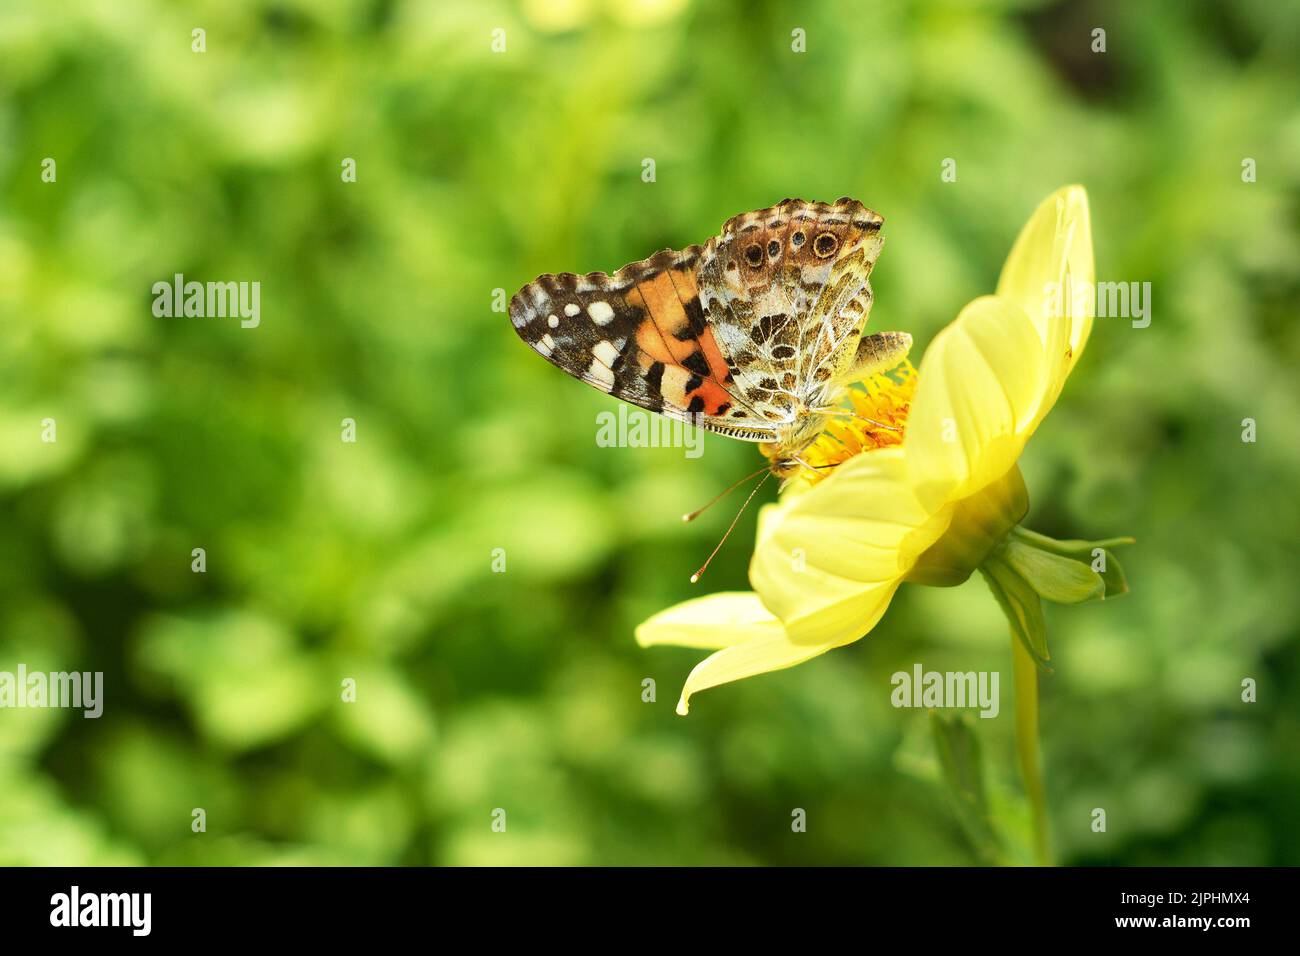 Yellow dahlia and butterfly in the garden. Summer garden concept Stock Photo